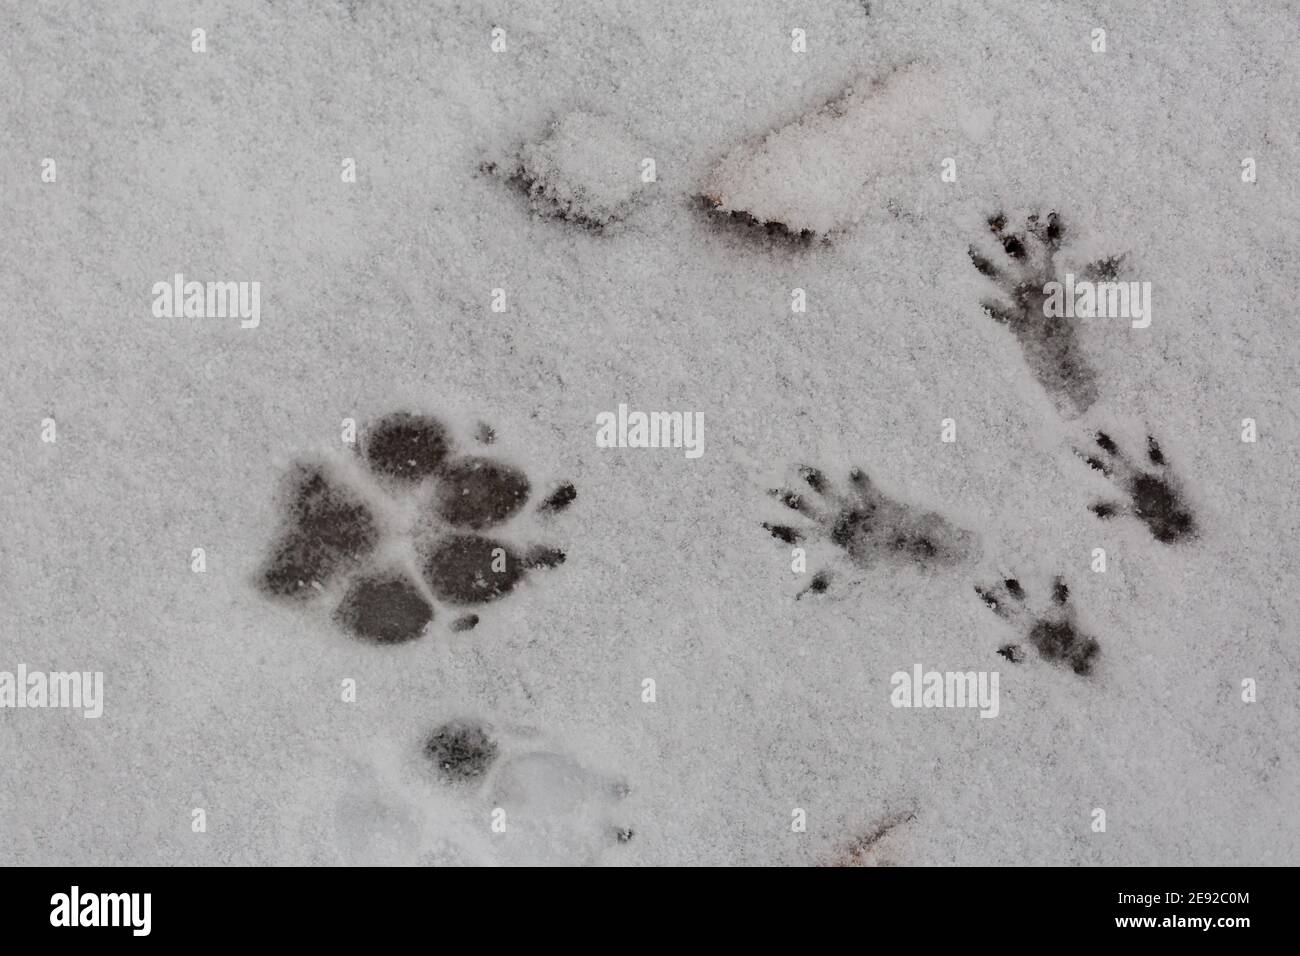 Huellas de una pata de perro y las cuatro patas de una ardilla en la nieve. Símbolo para grandes y pequeños, siendo diferentes e inesperados encuentros. Foto de stock